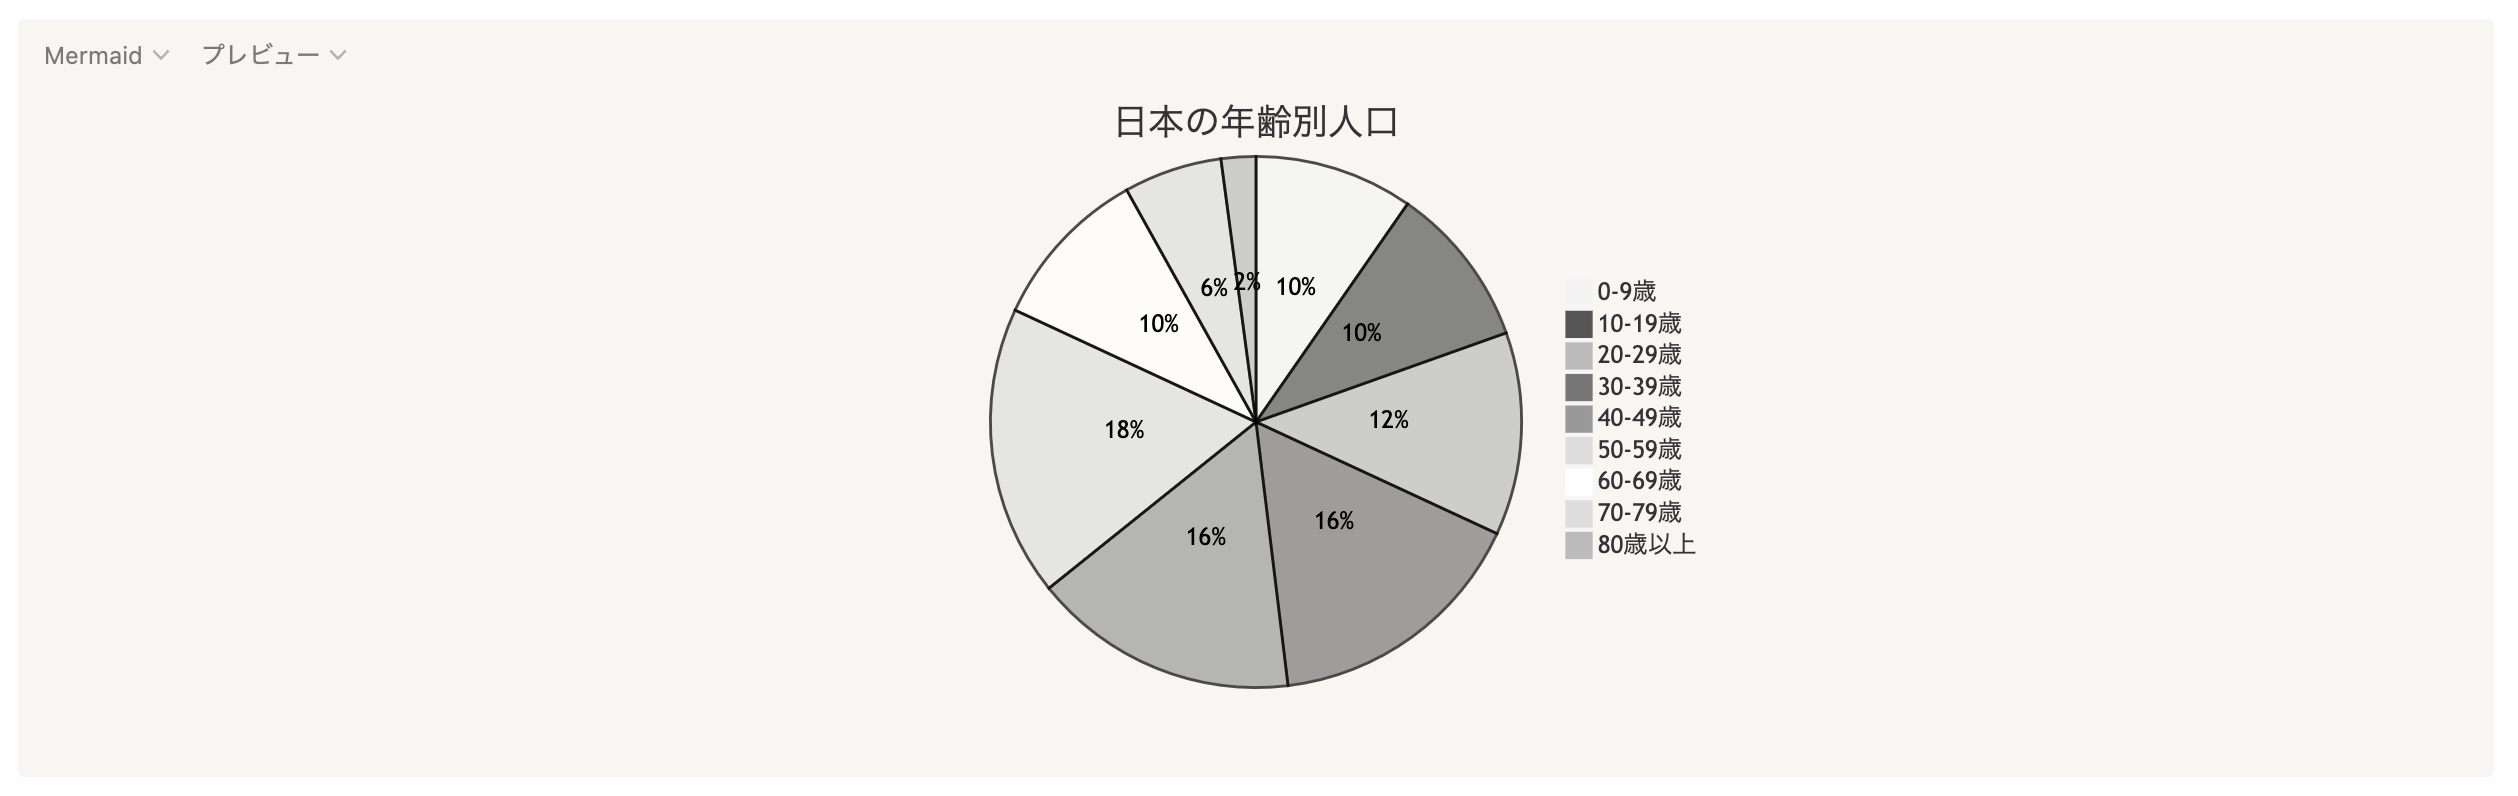 日本の年齢別人口を円グラフで作成